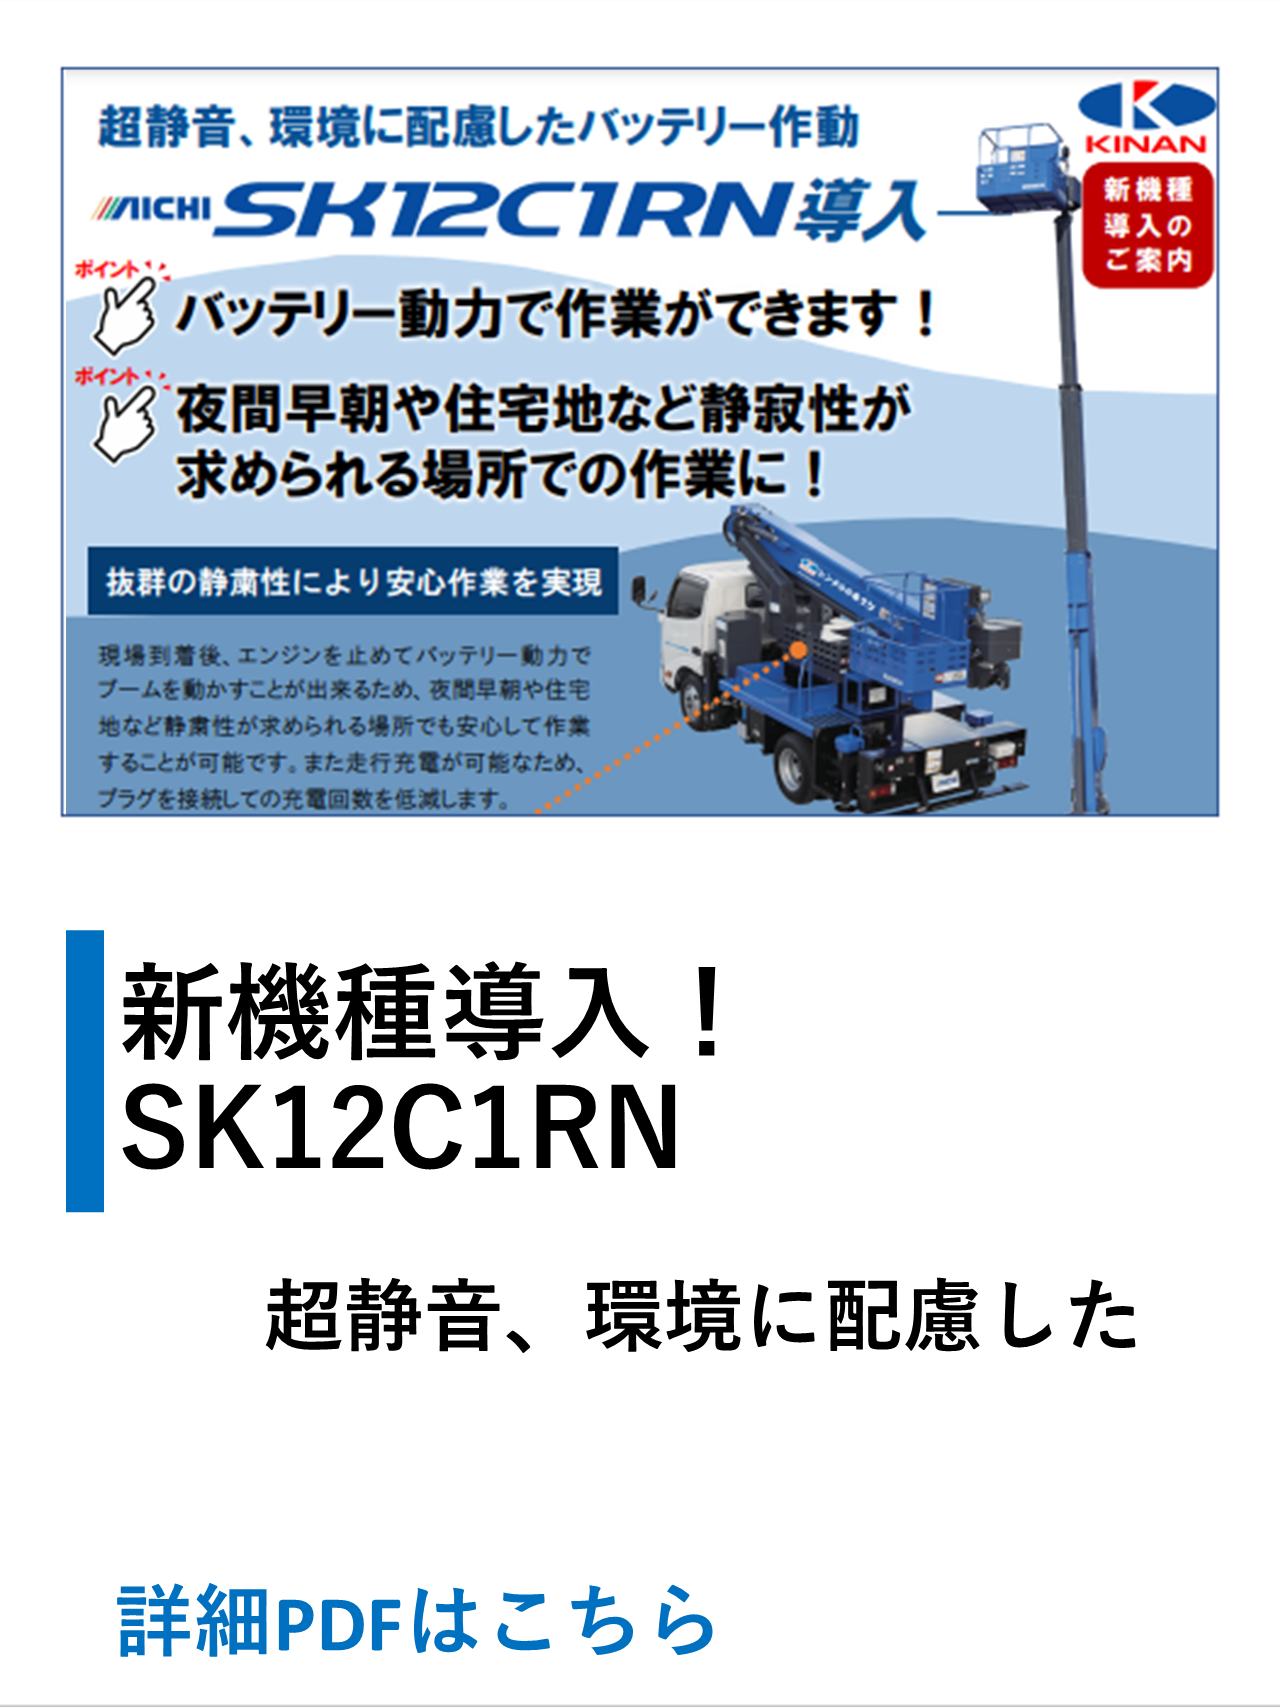 SK12C1RN